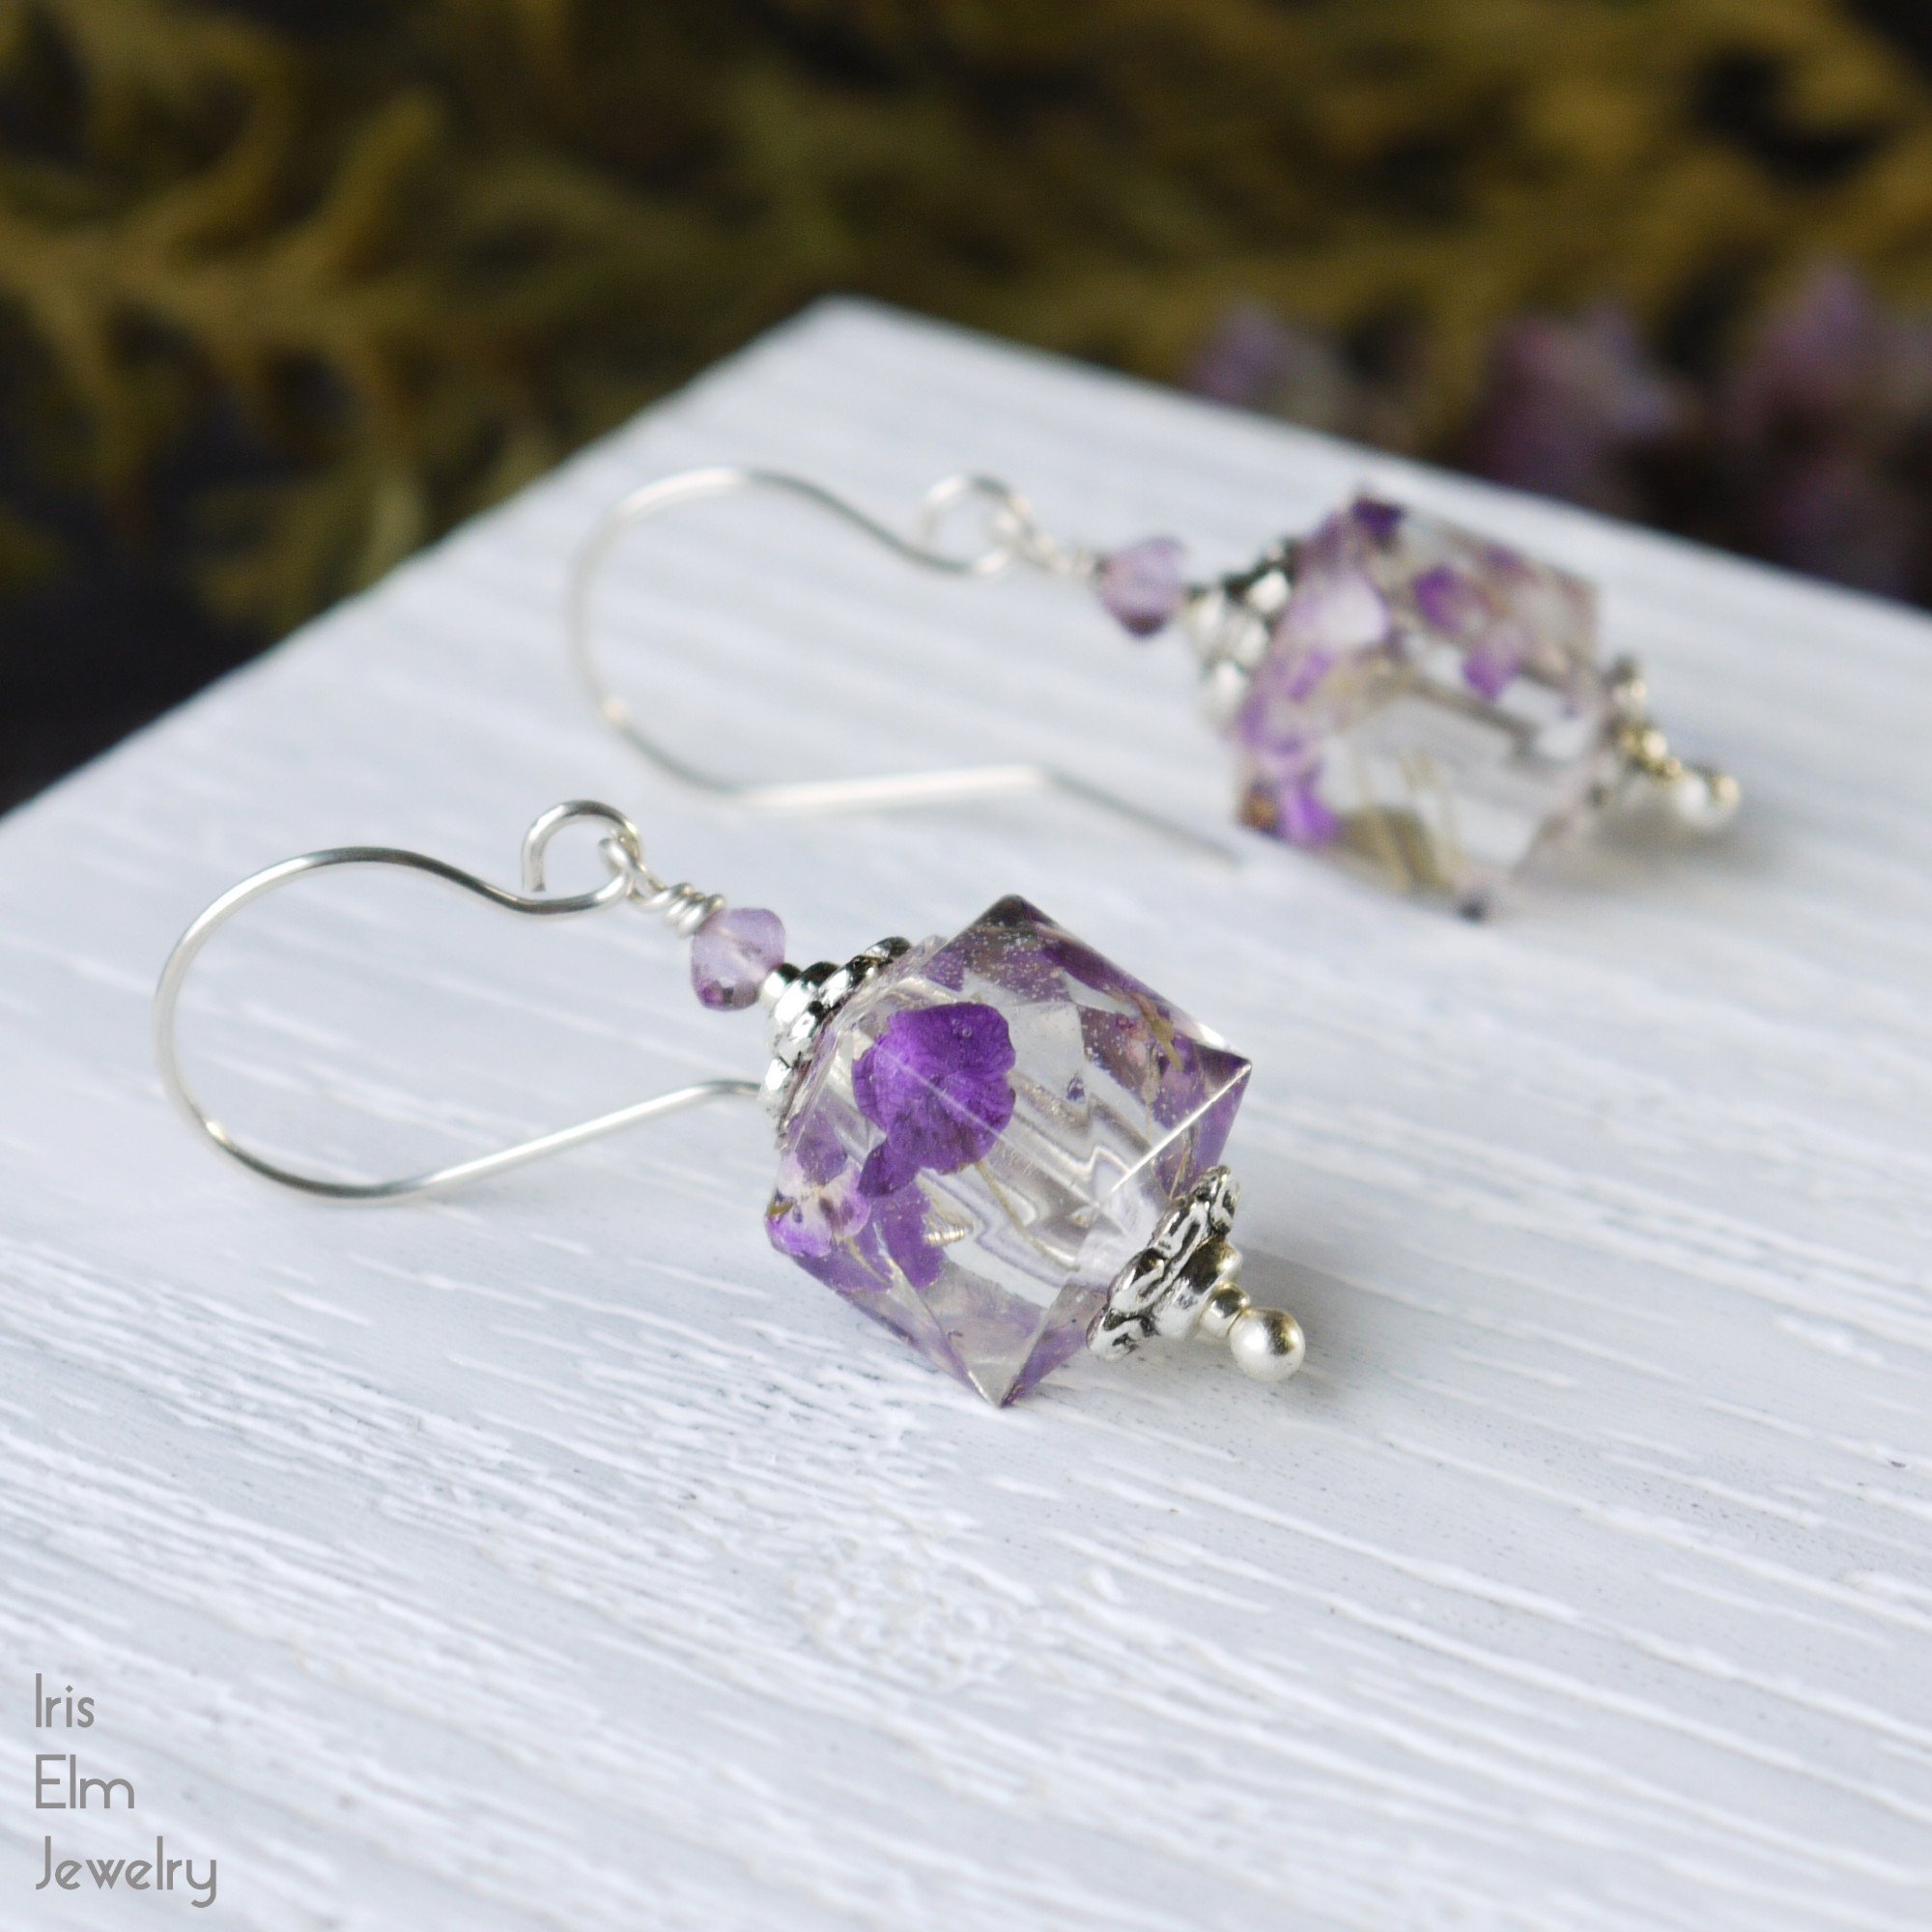 Handmade Jewelry Resin Earrings Flower Earrings Jewelry Sets Resin Necklace Purple Flower Gold Resin Jewelry Set Purple Flower Jewelry